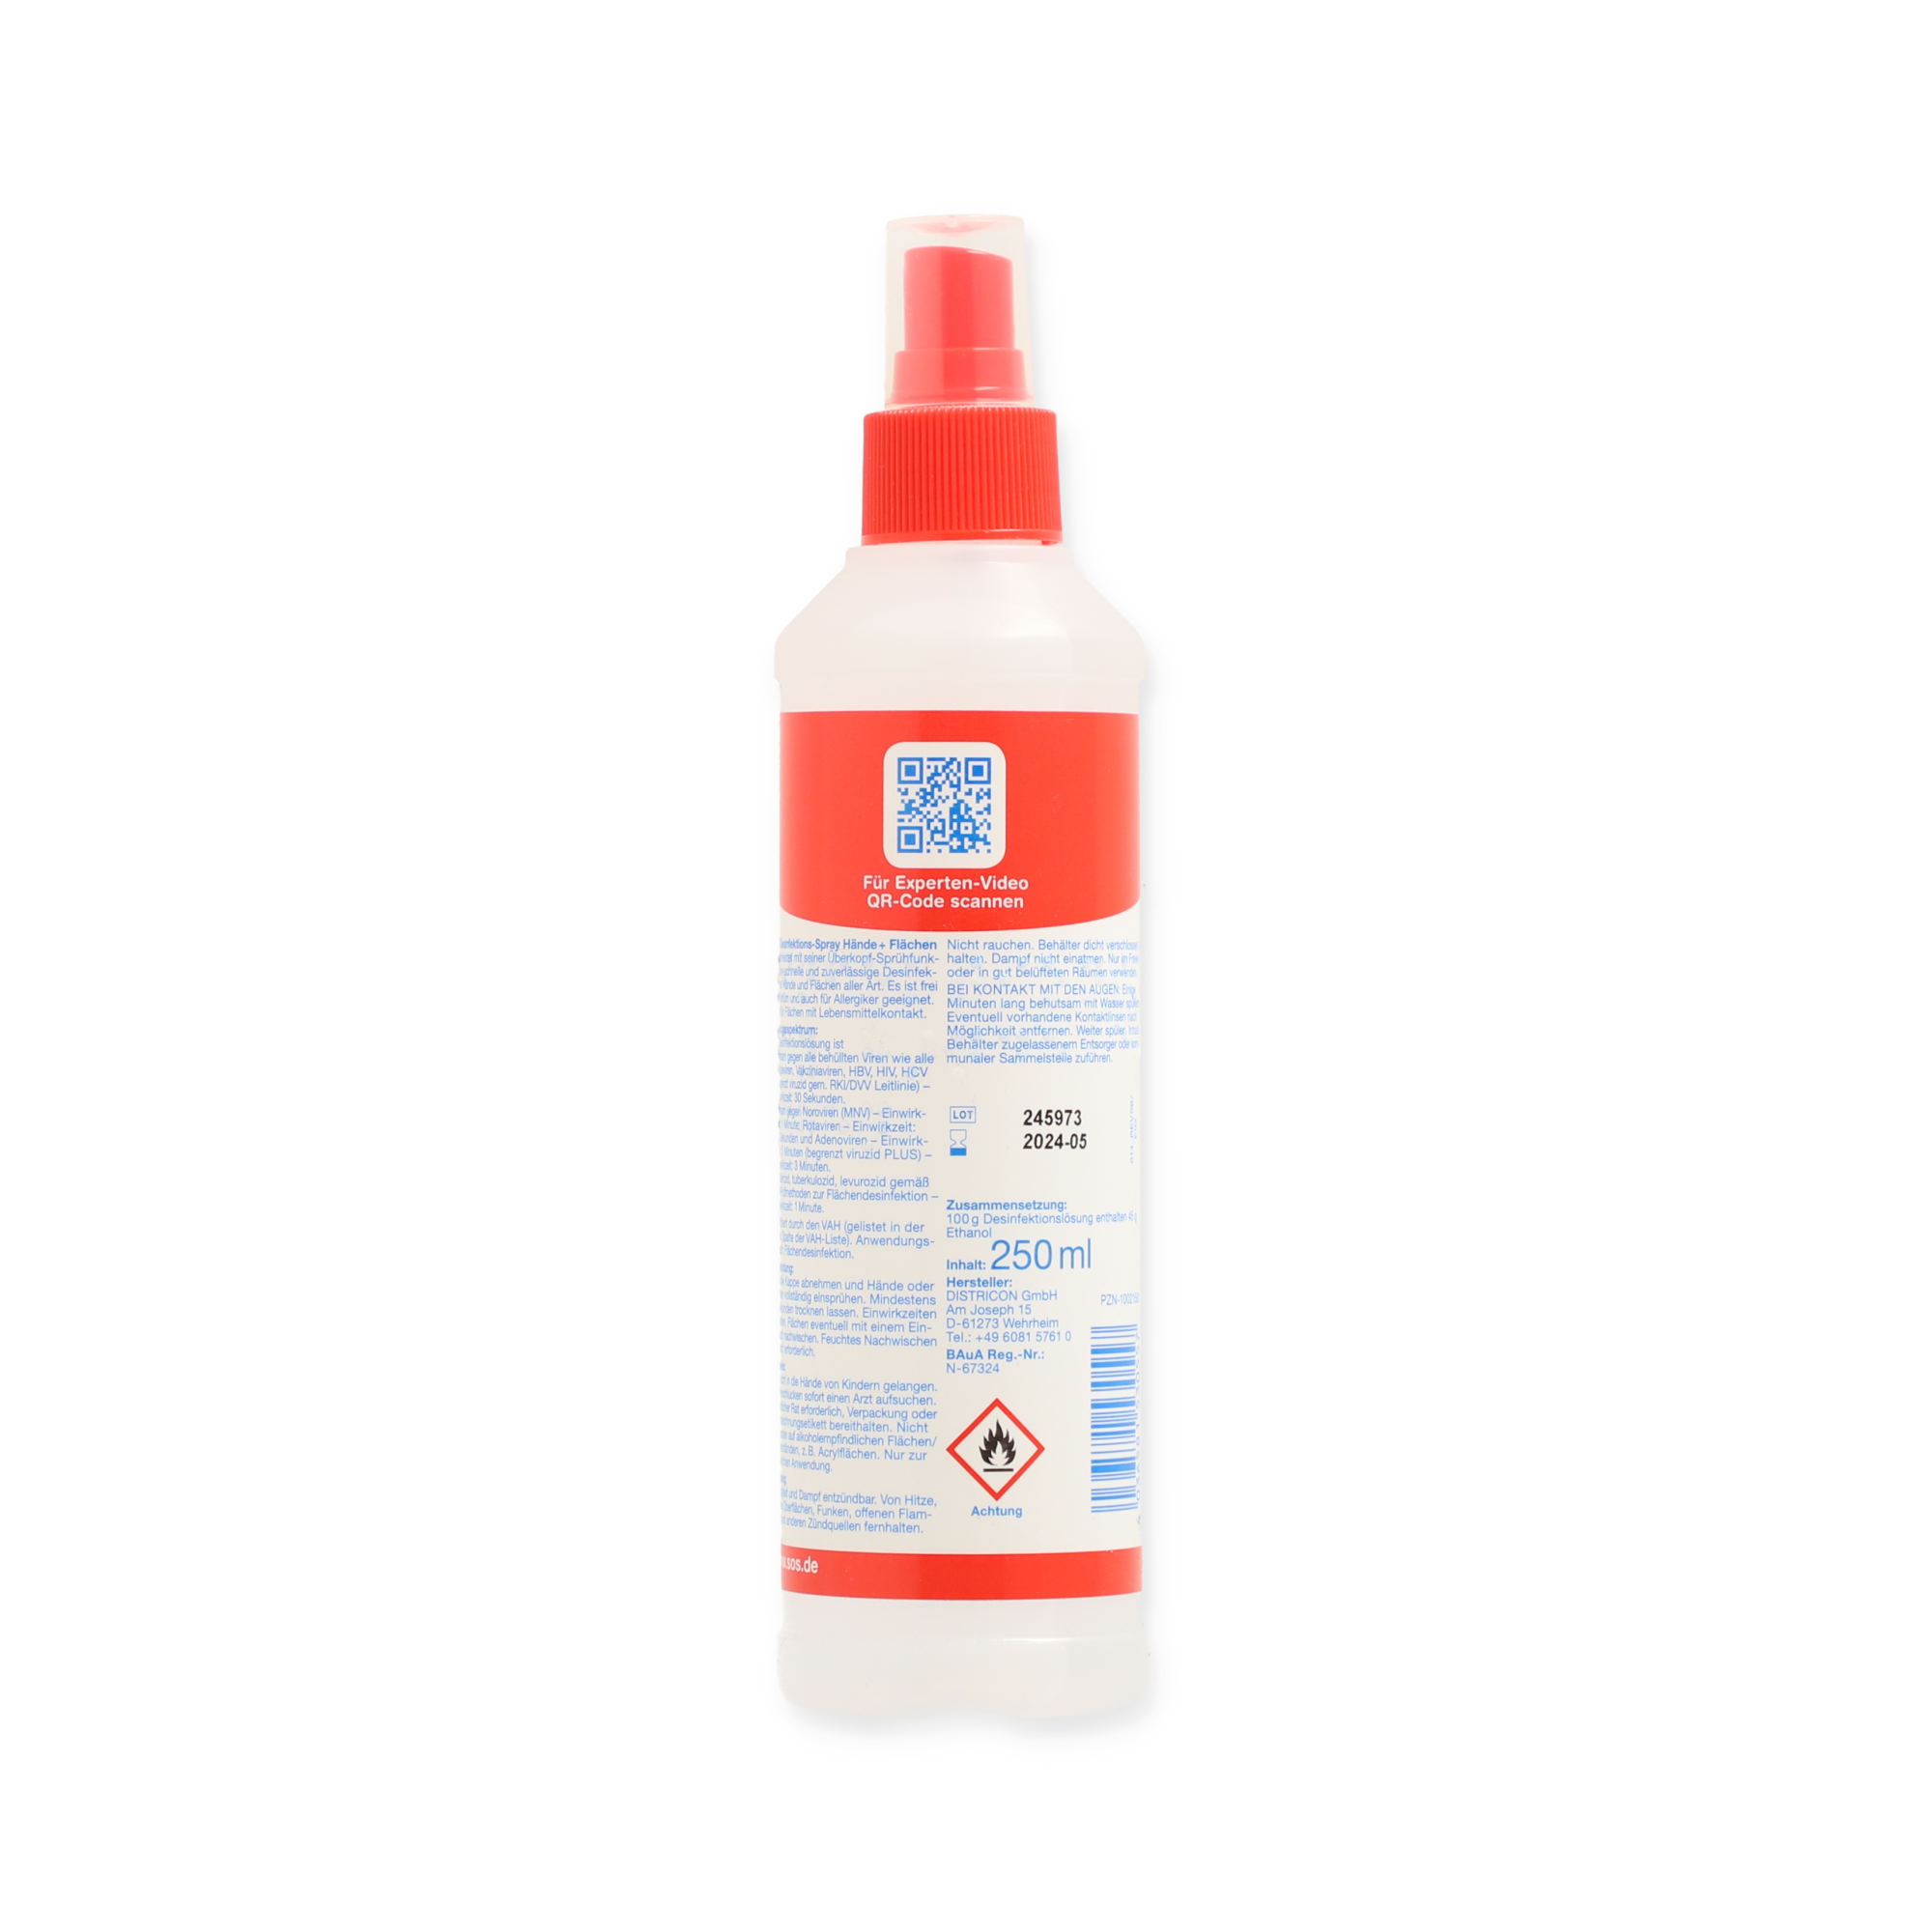 Desinfektions-Spray 'Hände + Flächen' 250 ml + product picture